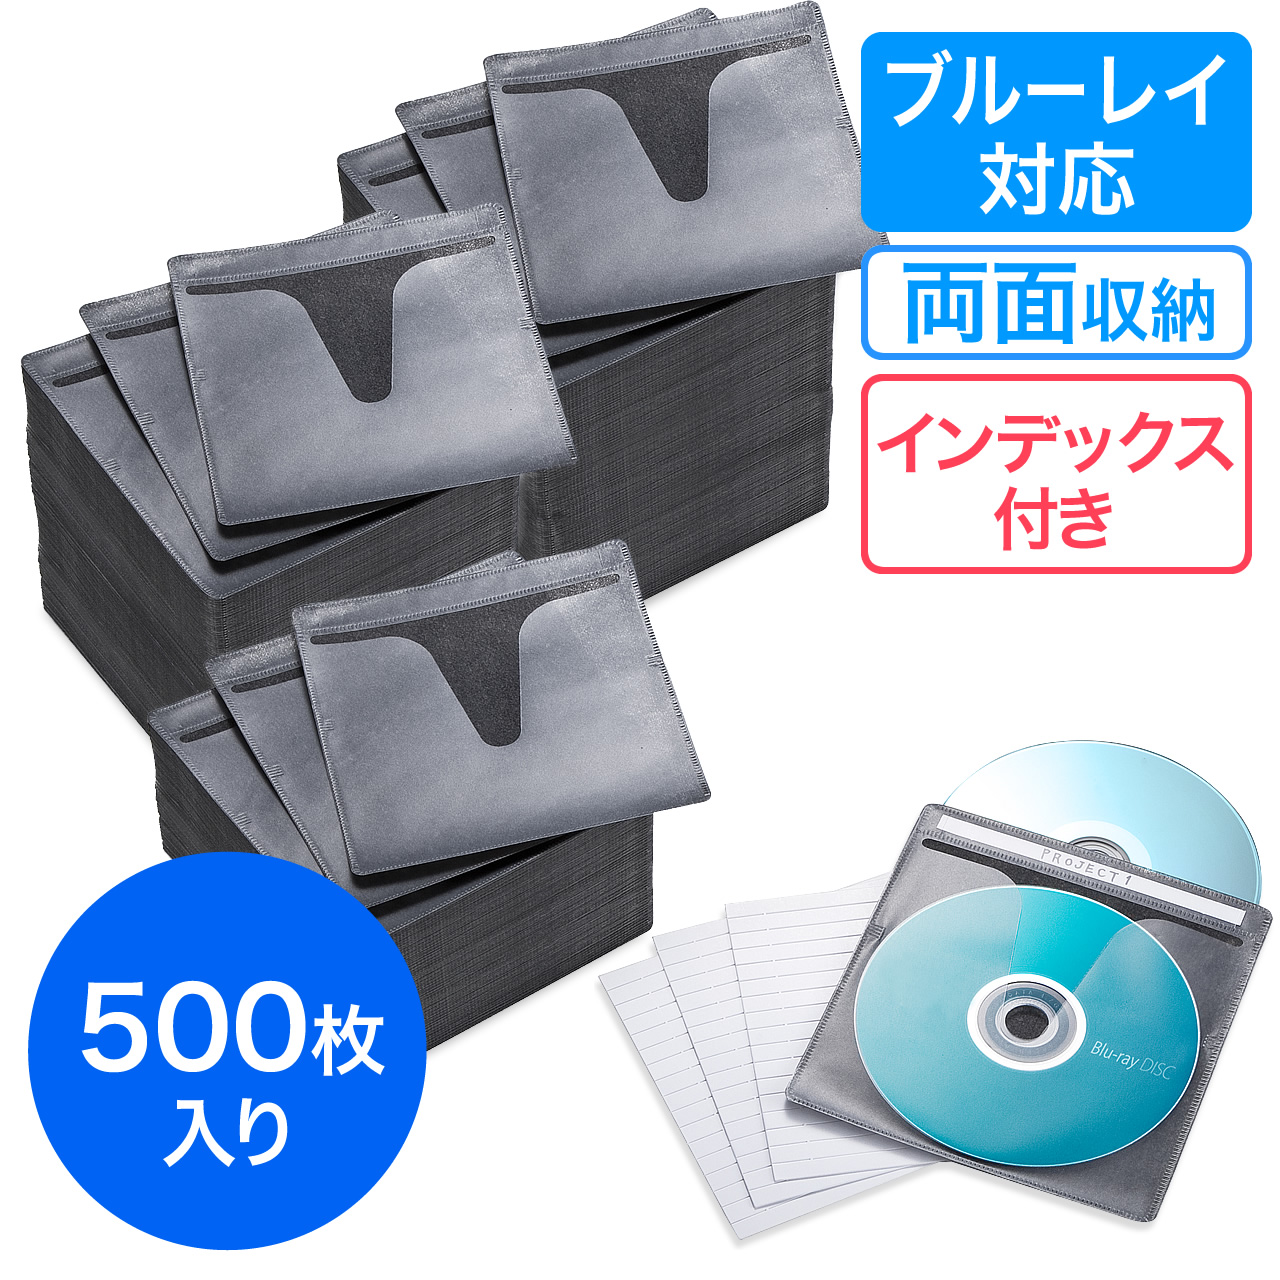 ブルーレイディスク対応不織布ケース 100枚入 両面収納 ブラック 0 Fcd048bkの販売商品 通販ならサンワダイレクト